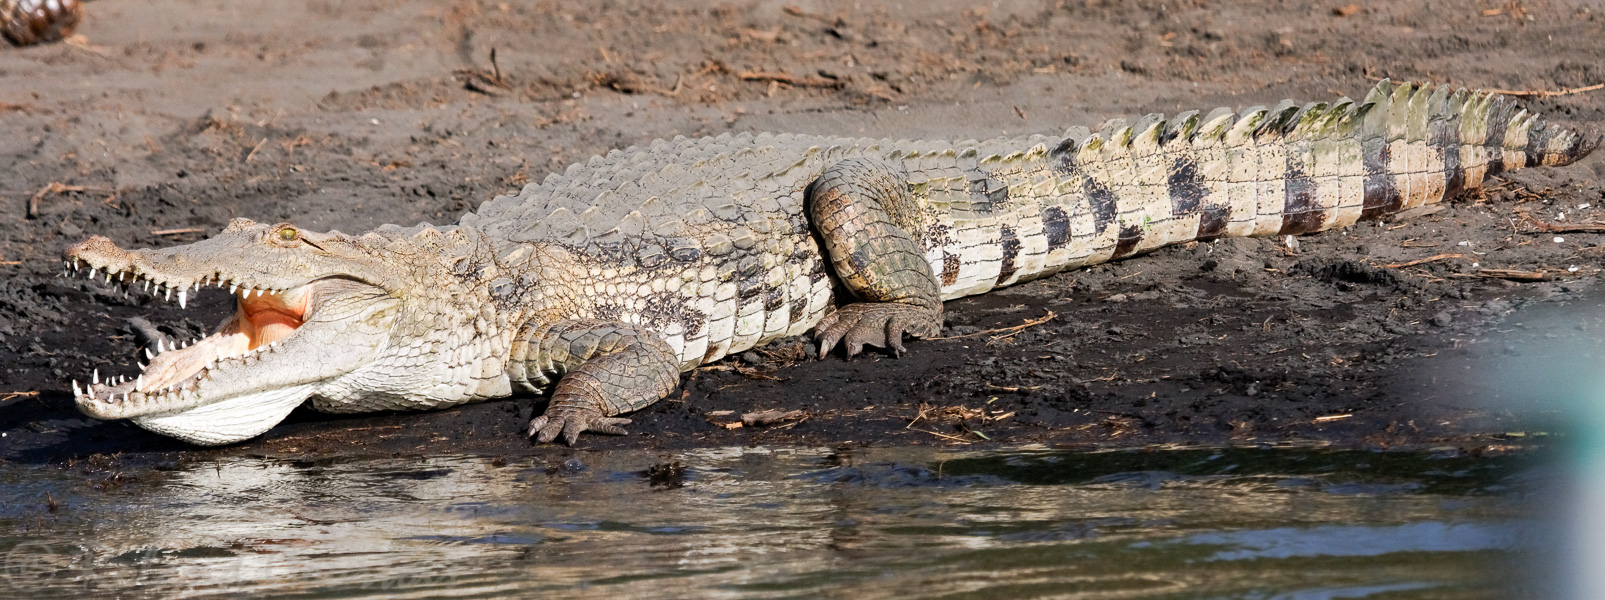 Les plus grands crocodiles d'Afrique